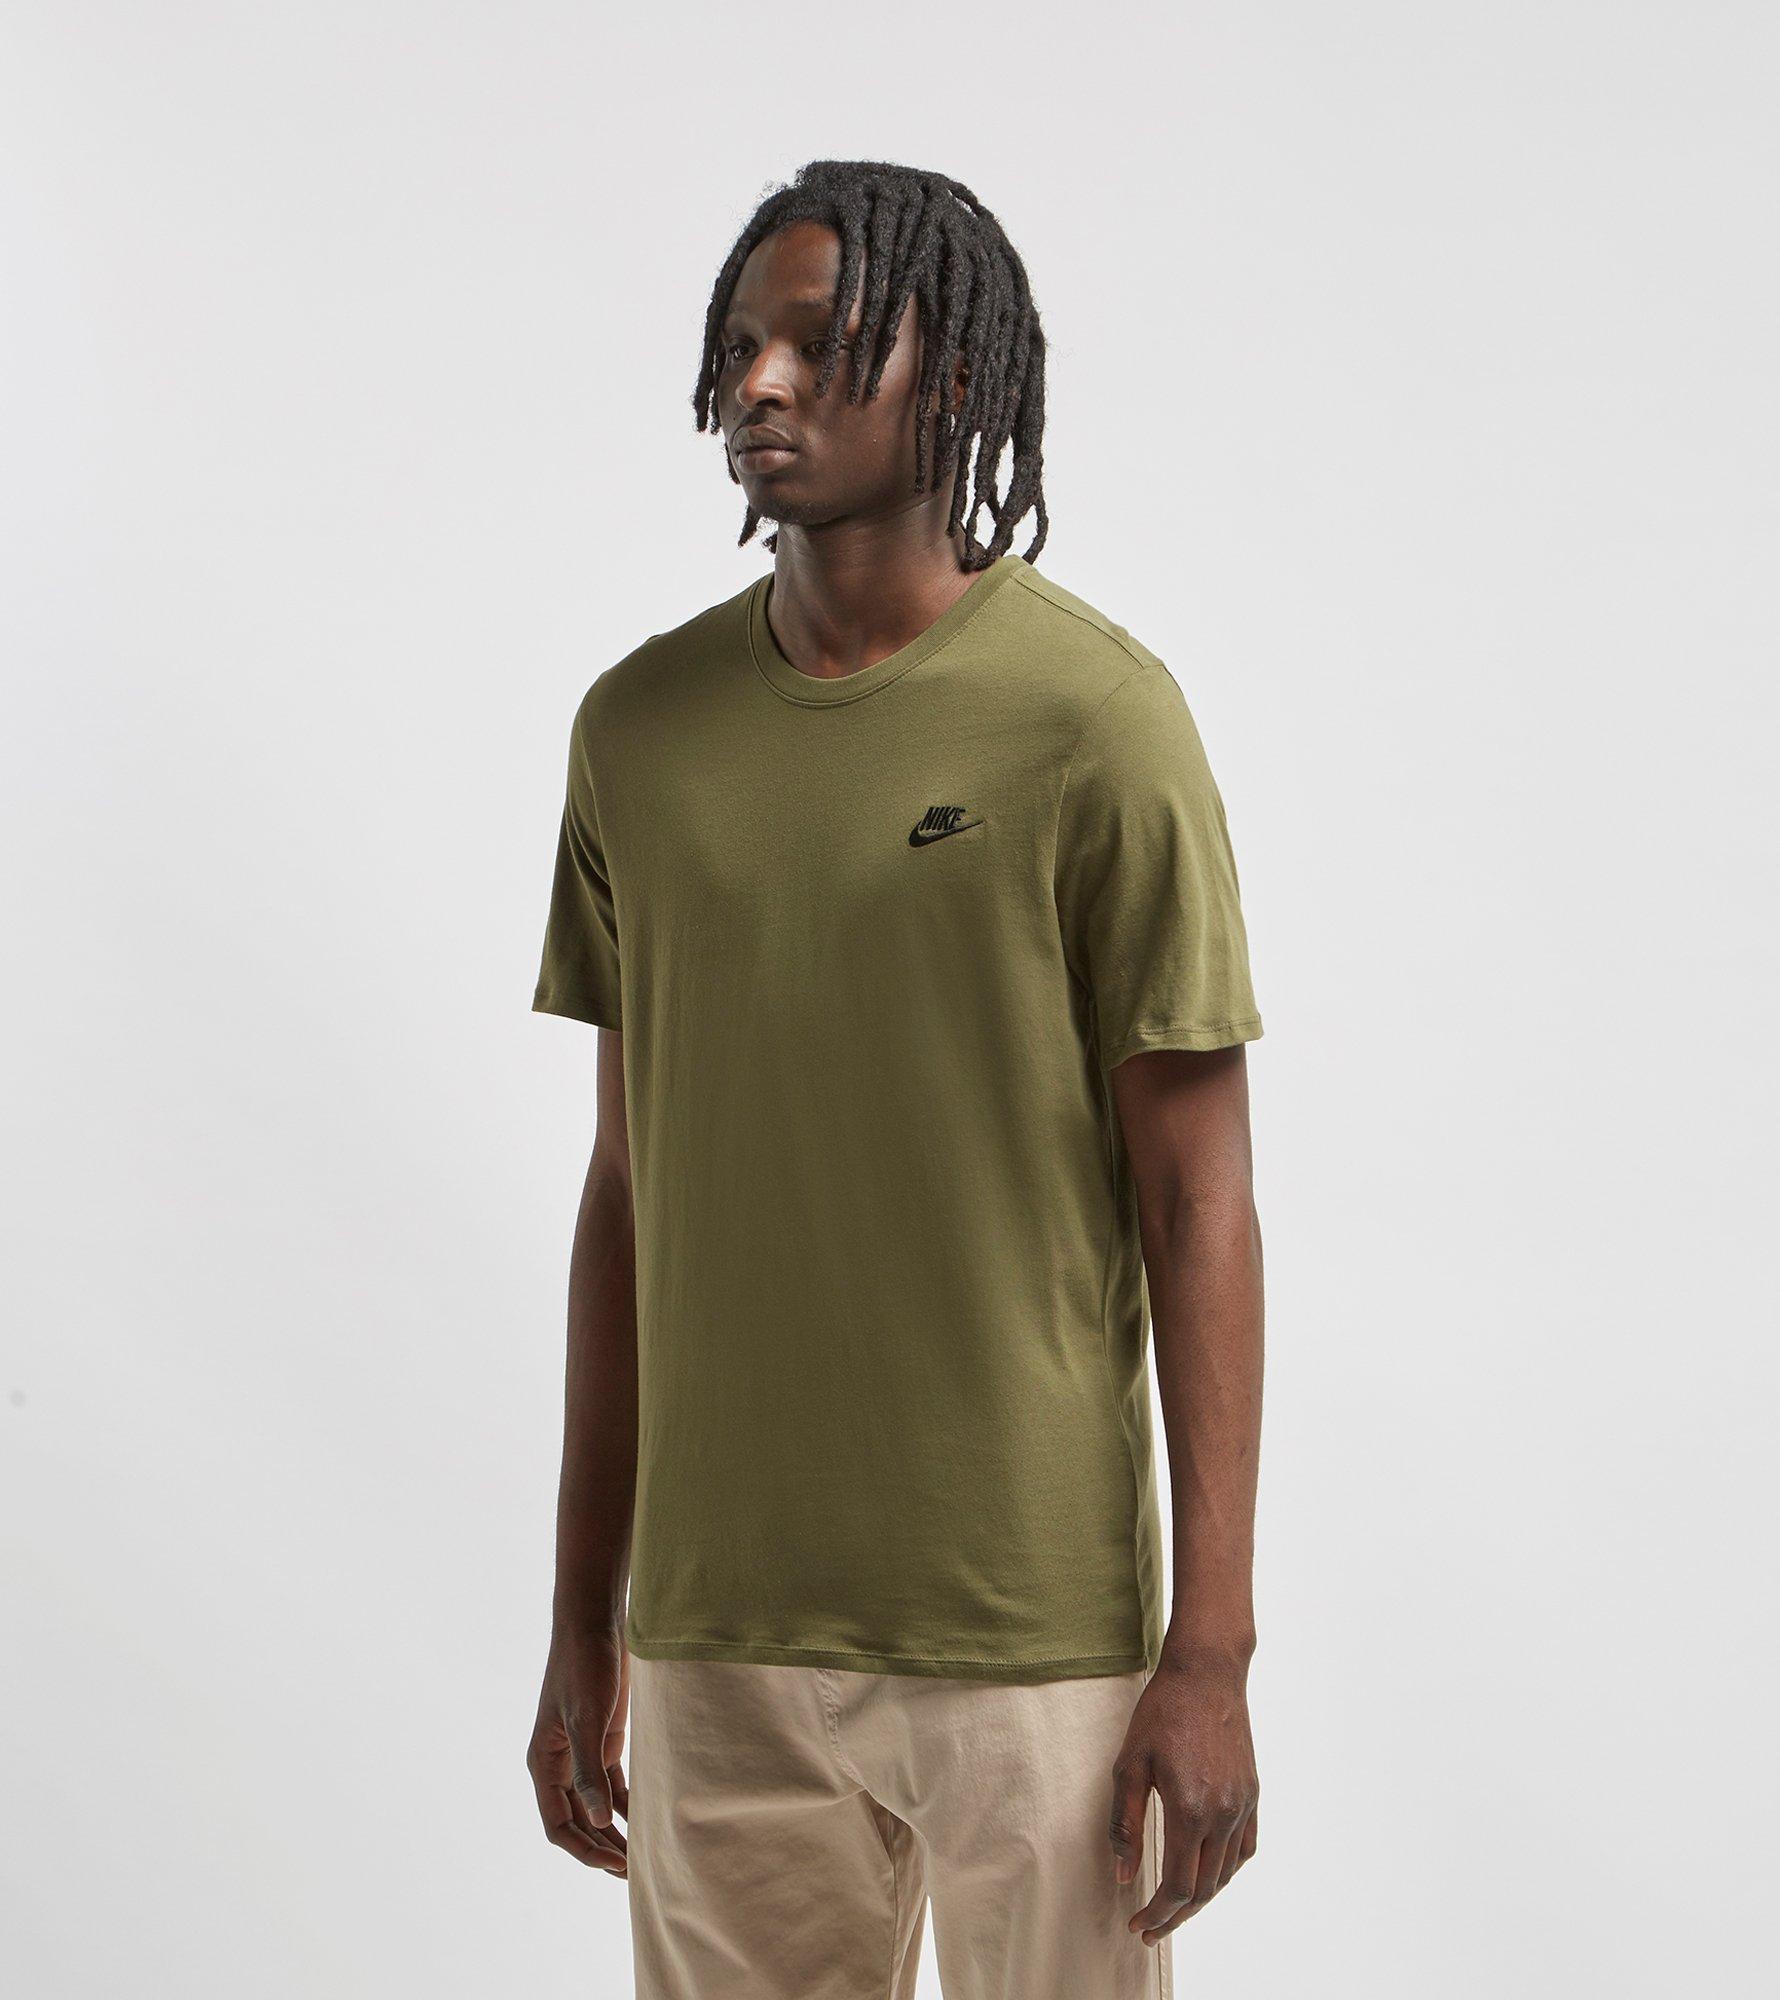 Nike Sportswear T-shirt in Green for Men - Lyst